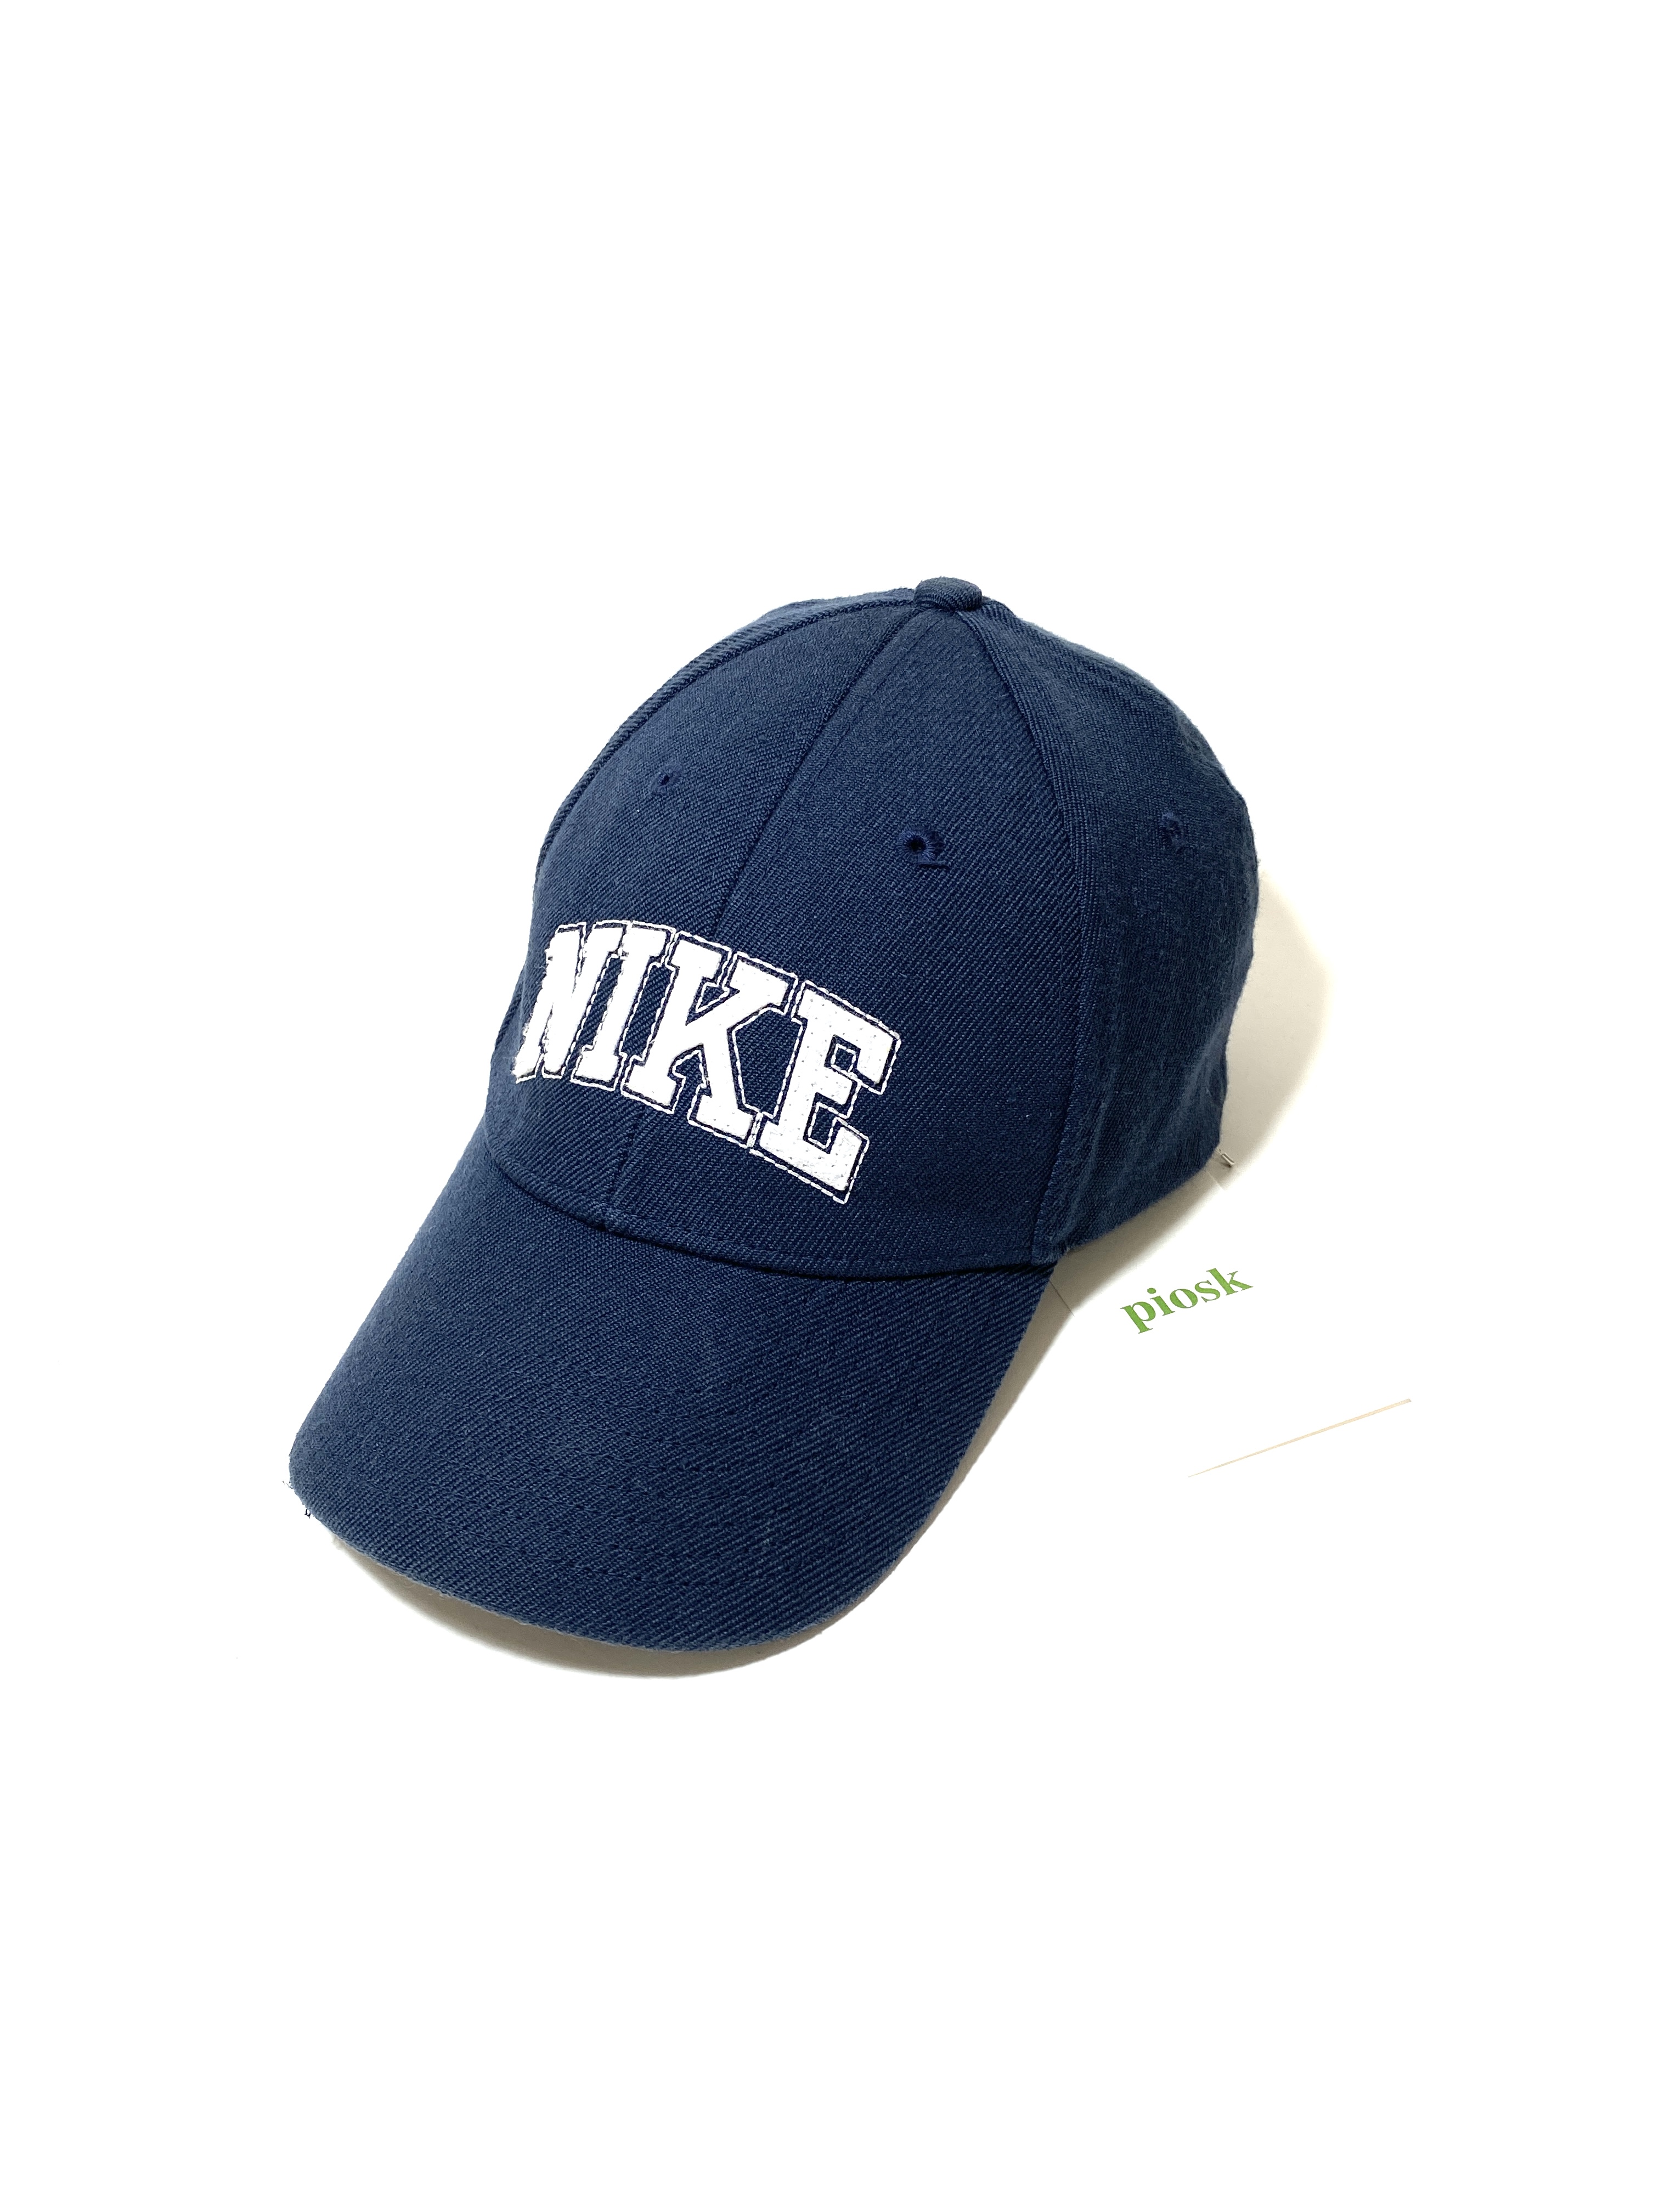 00's nike logo cap (navy)